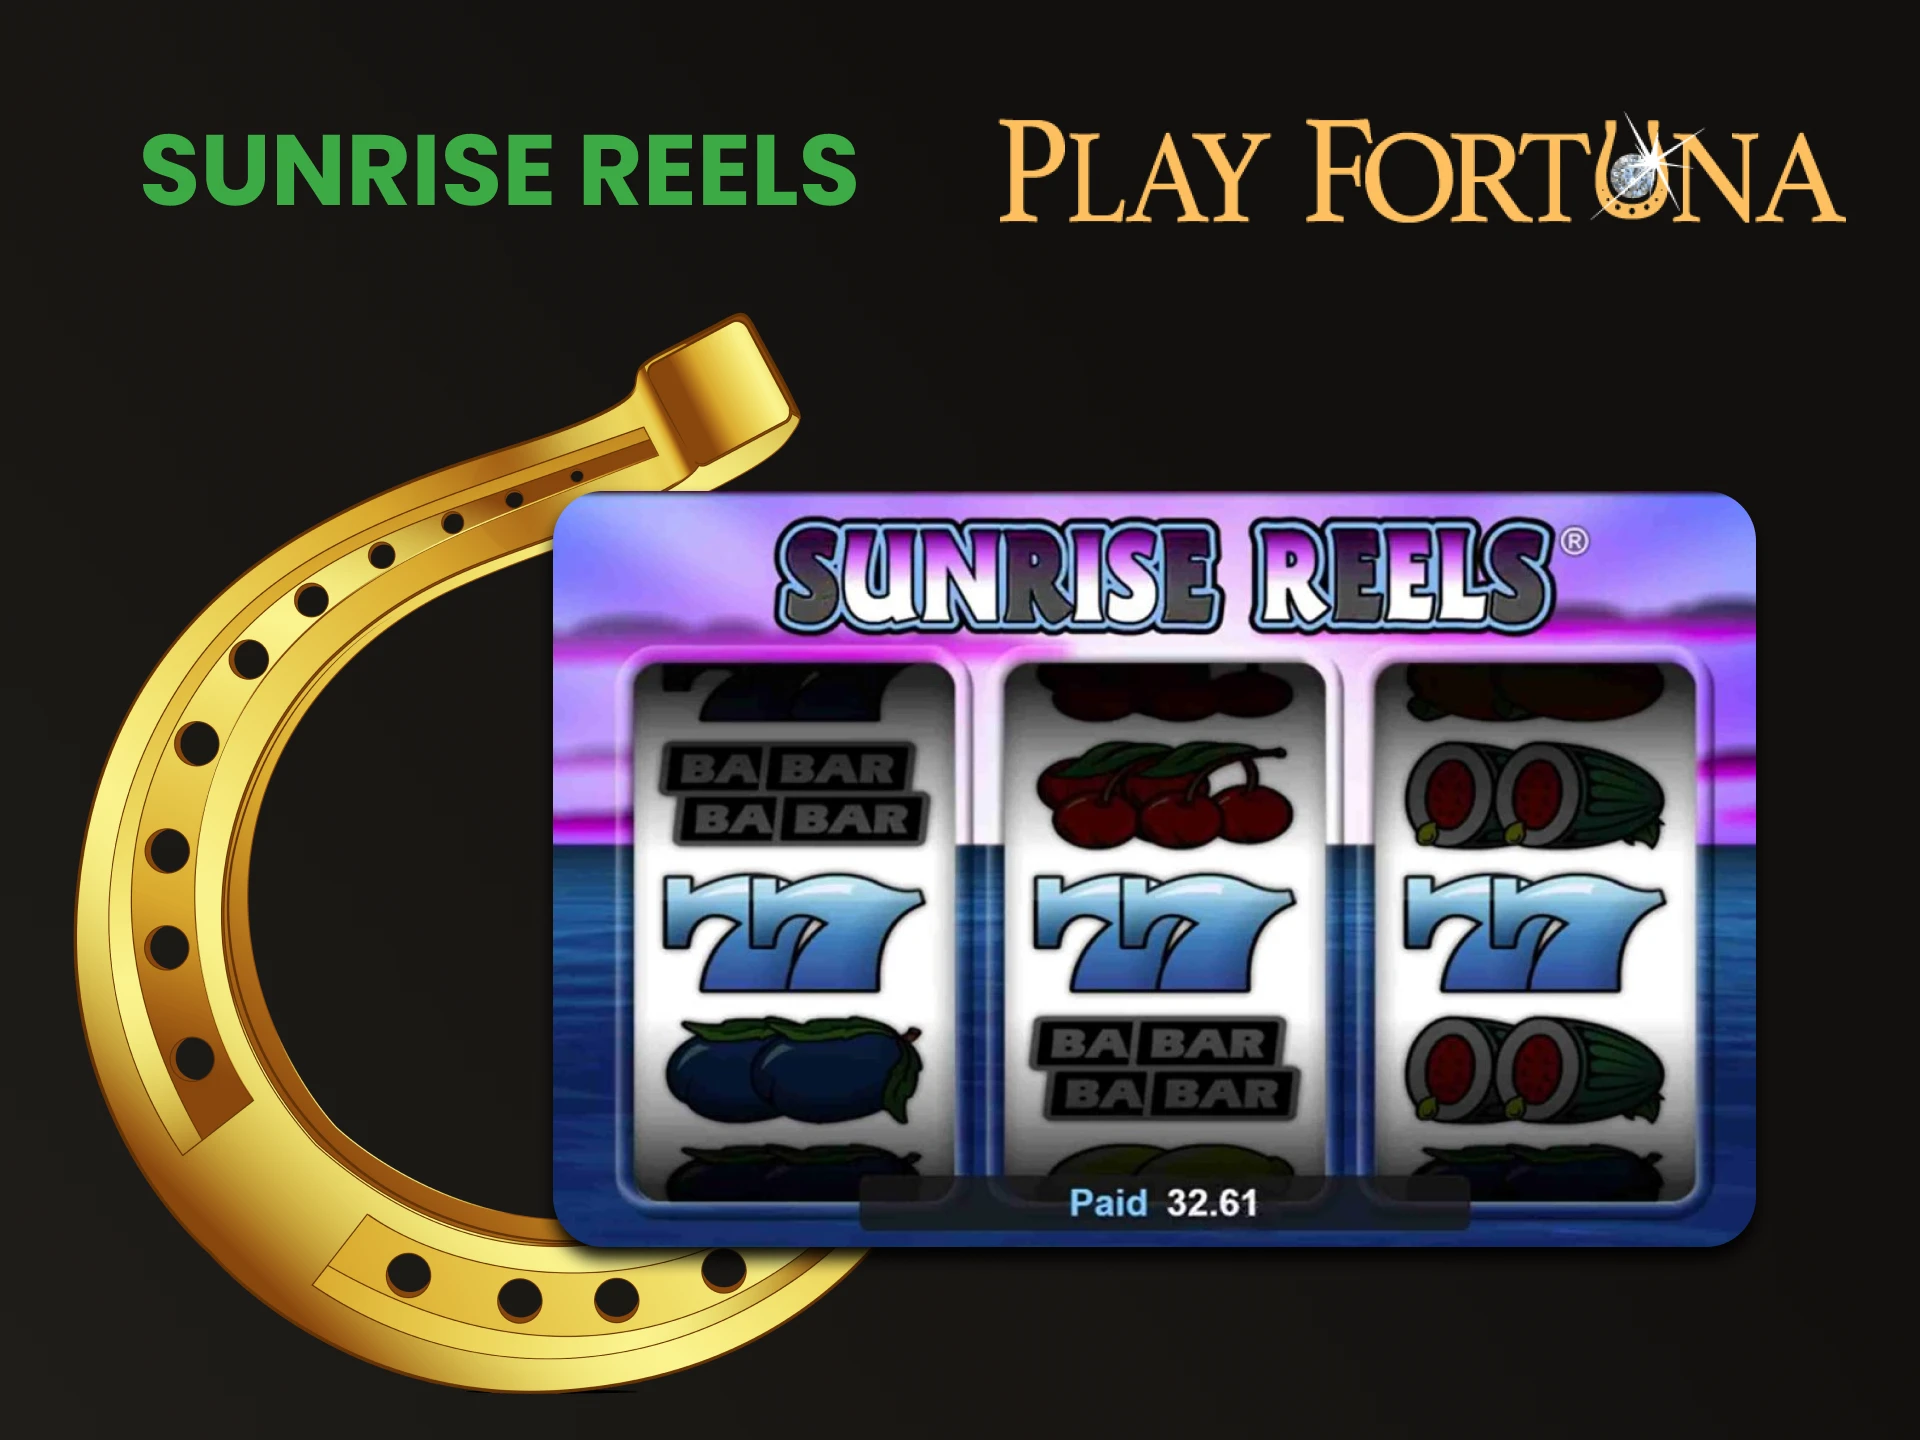 Para jogar slots no Play Fortuna, escolha Sunrise Reels.